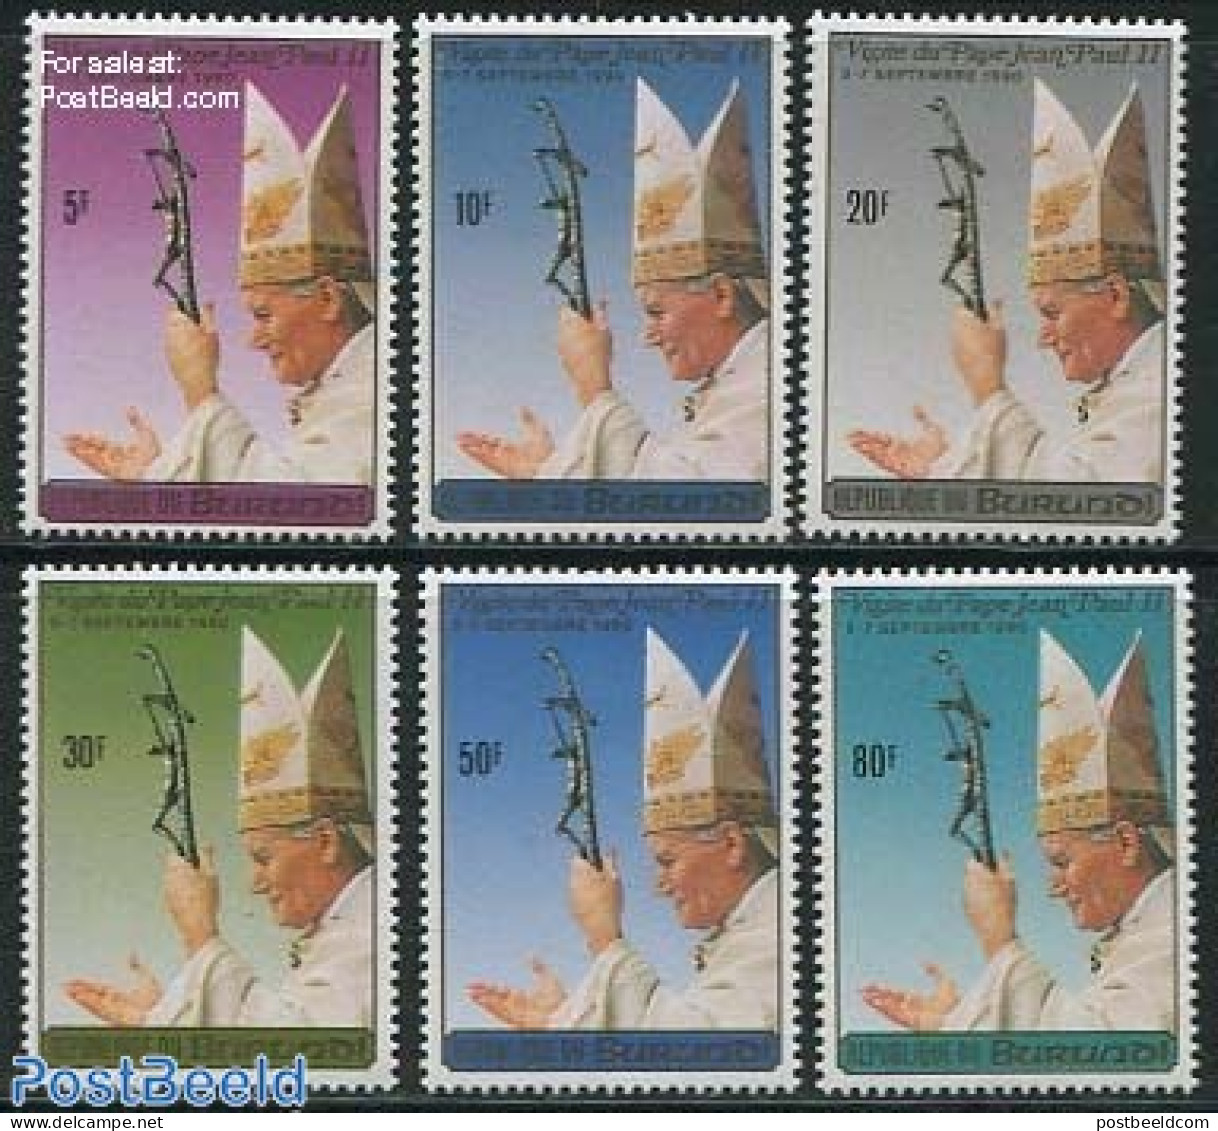 Burundi 1990 Popes Visit 6v, Mint NH, Religion - Pope - Religion - Papas